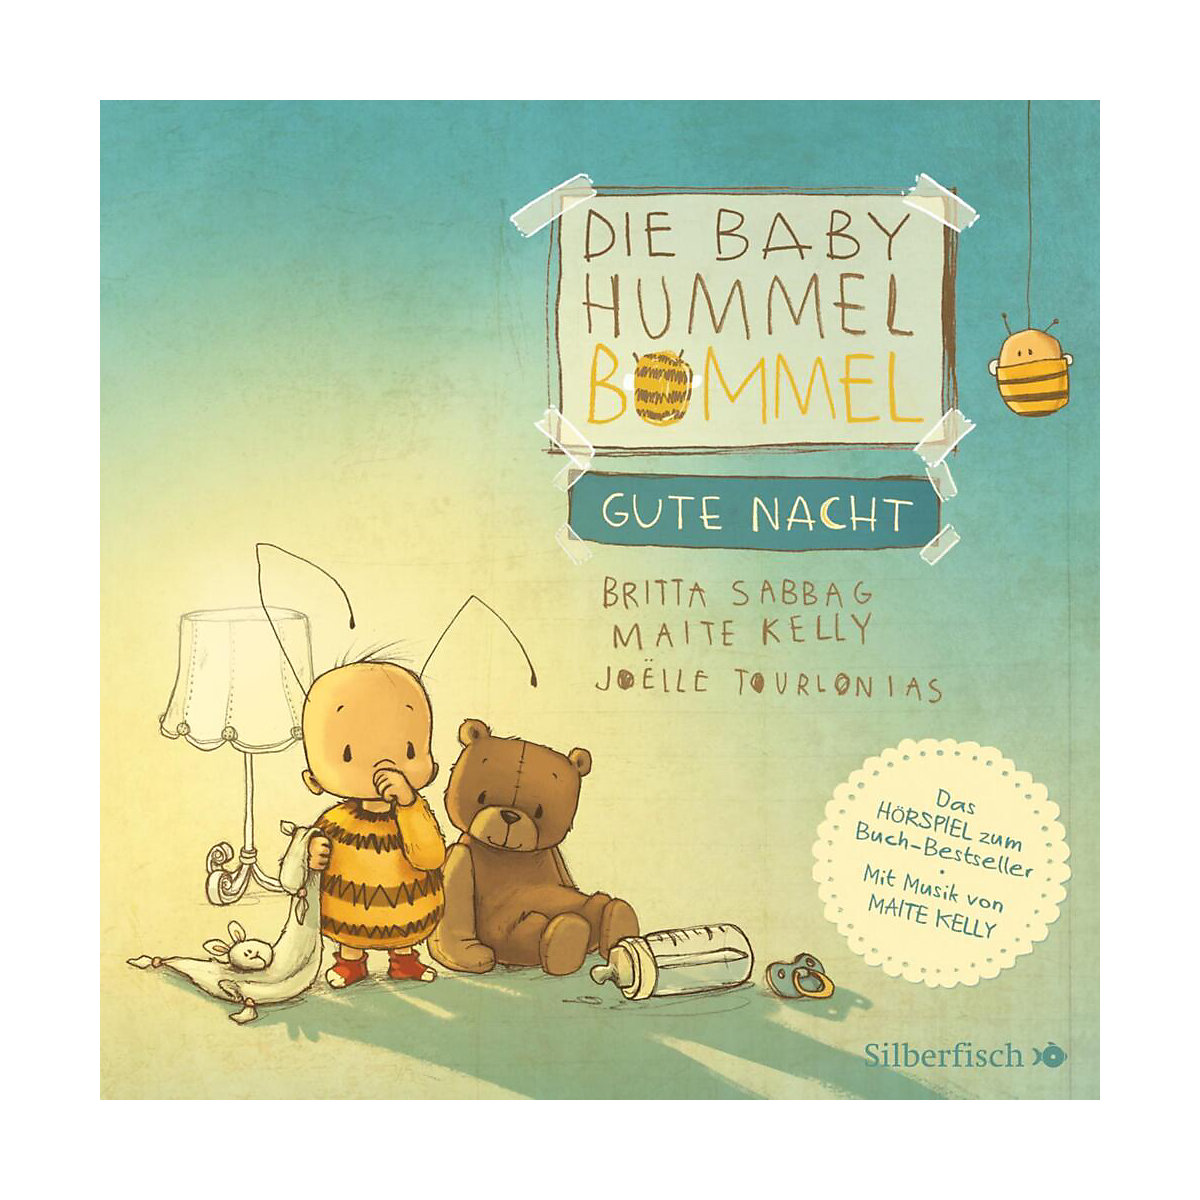 Die Baby Hummel Bommel Gute Nacht 1 Audio-CD